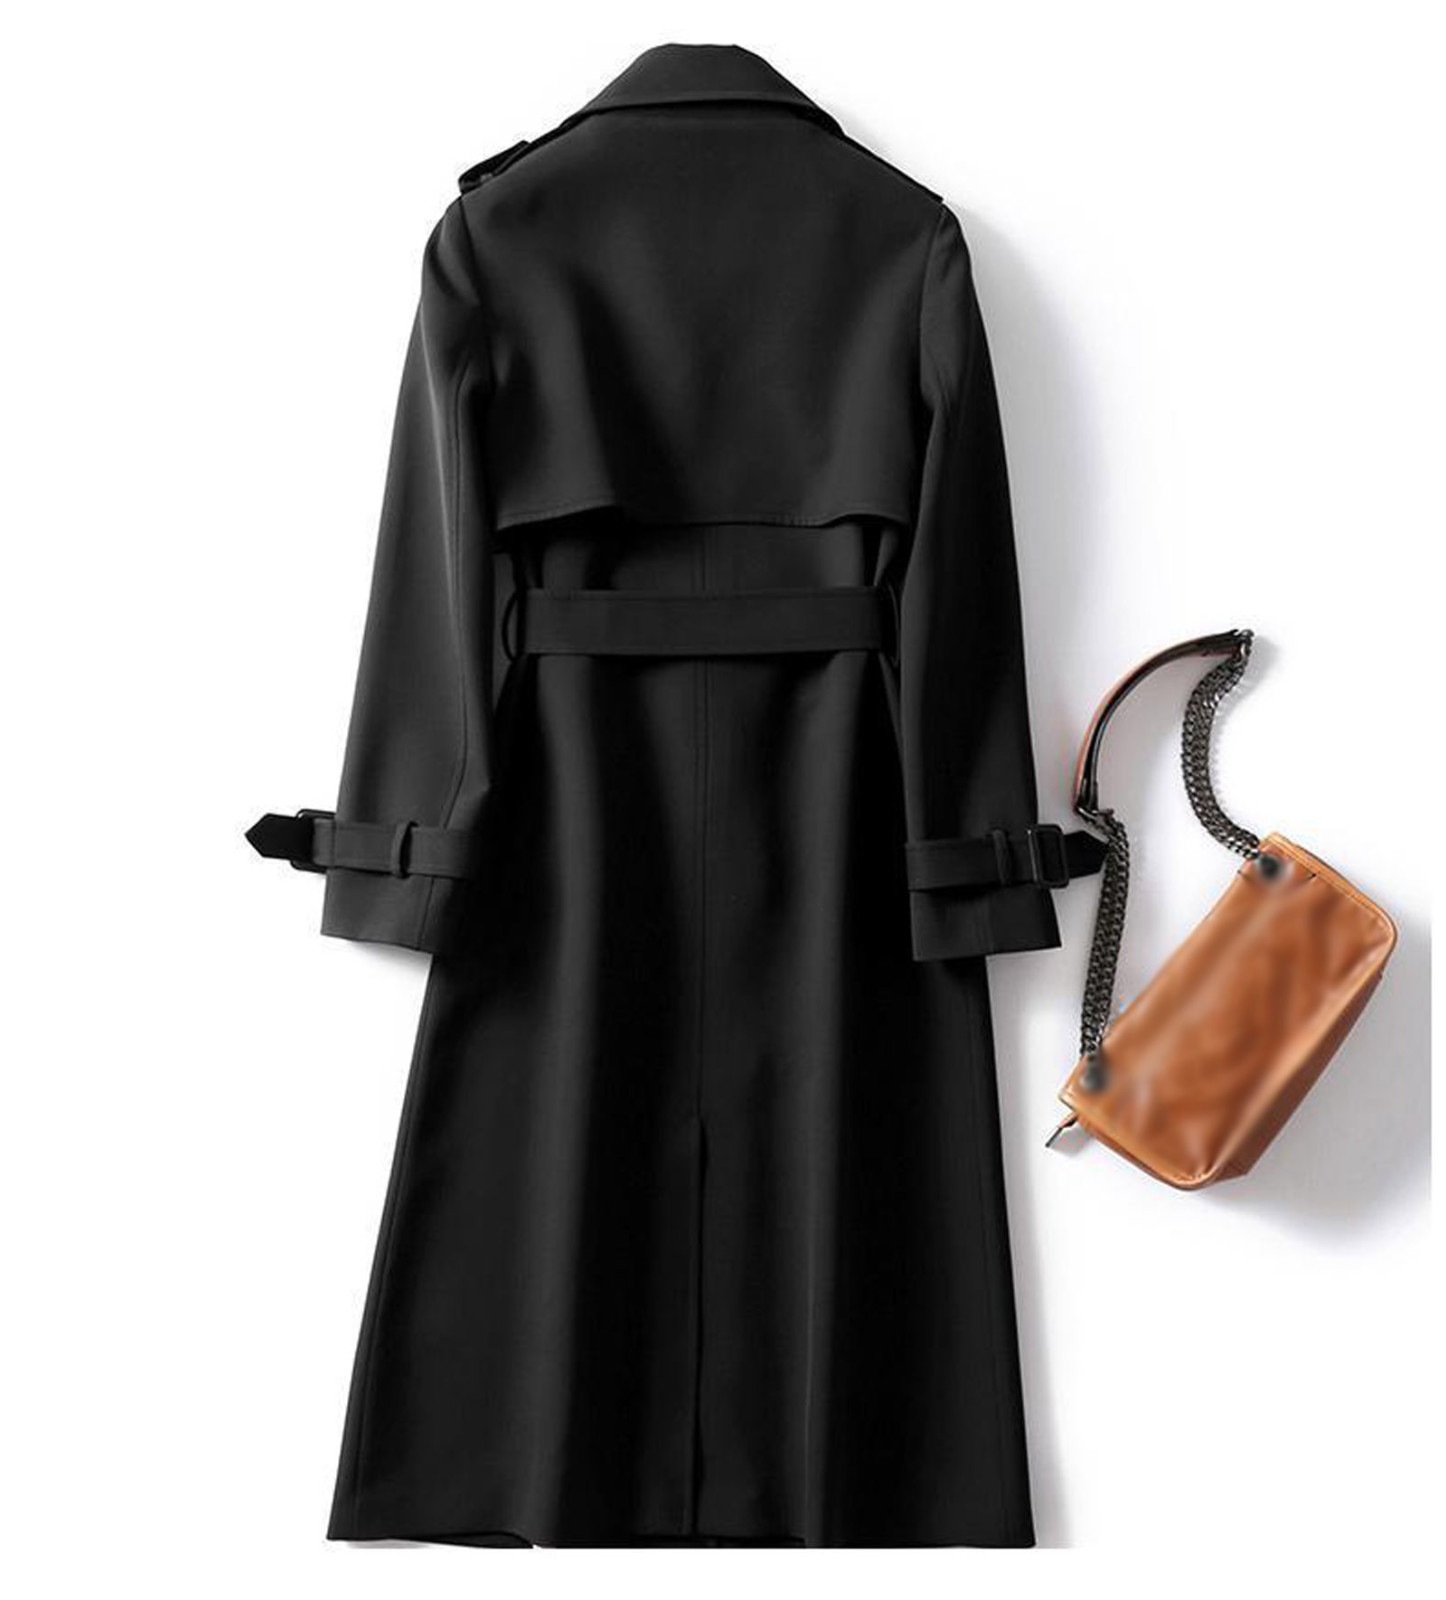 Mnycxen Women Overcoat Solid Slim Fit Coat Jacket Long Outerwear Windbreaker Trench - image 3 of 3